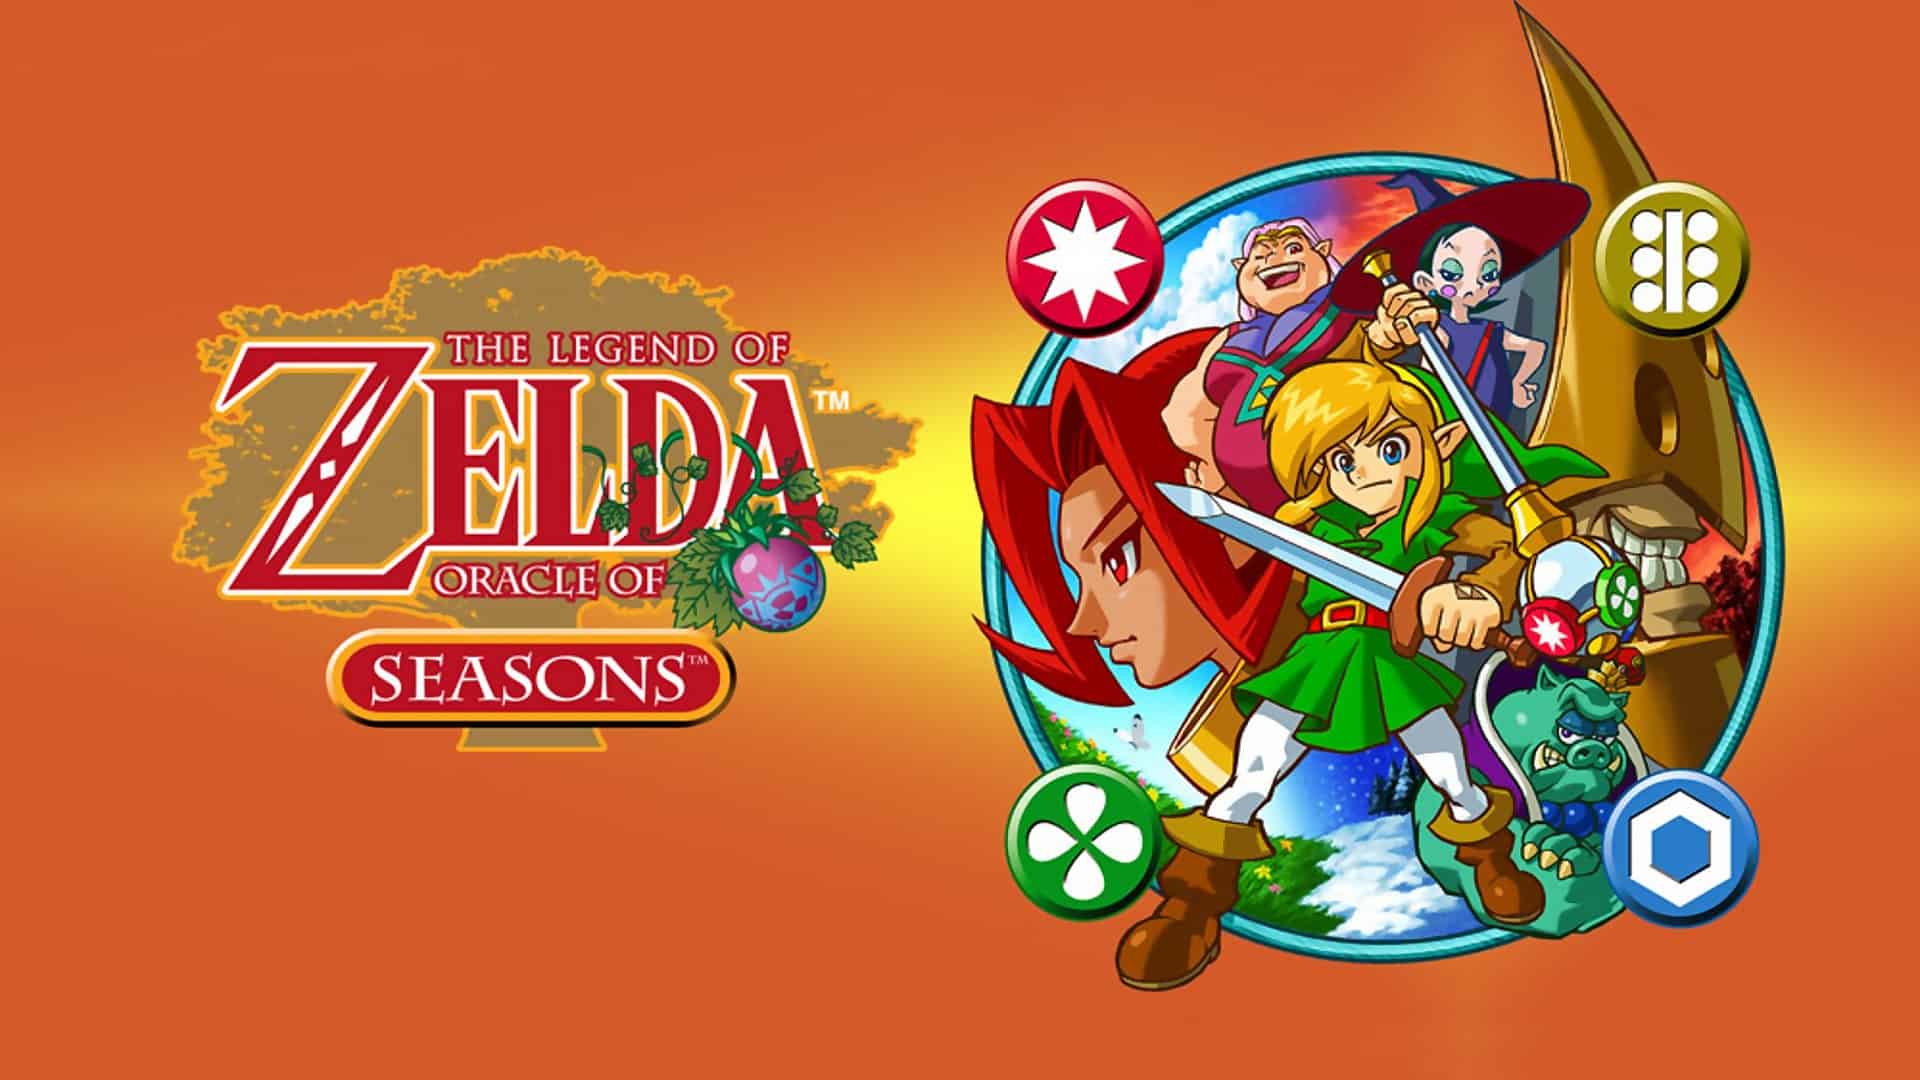 Best Zelda Games - The Legend of Zelda - Oracle of Seasons